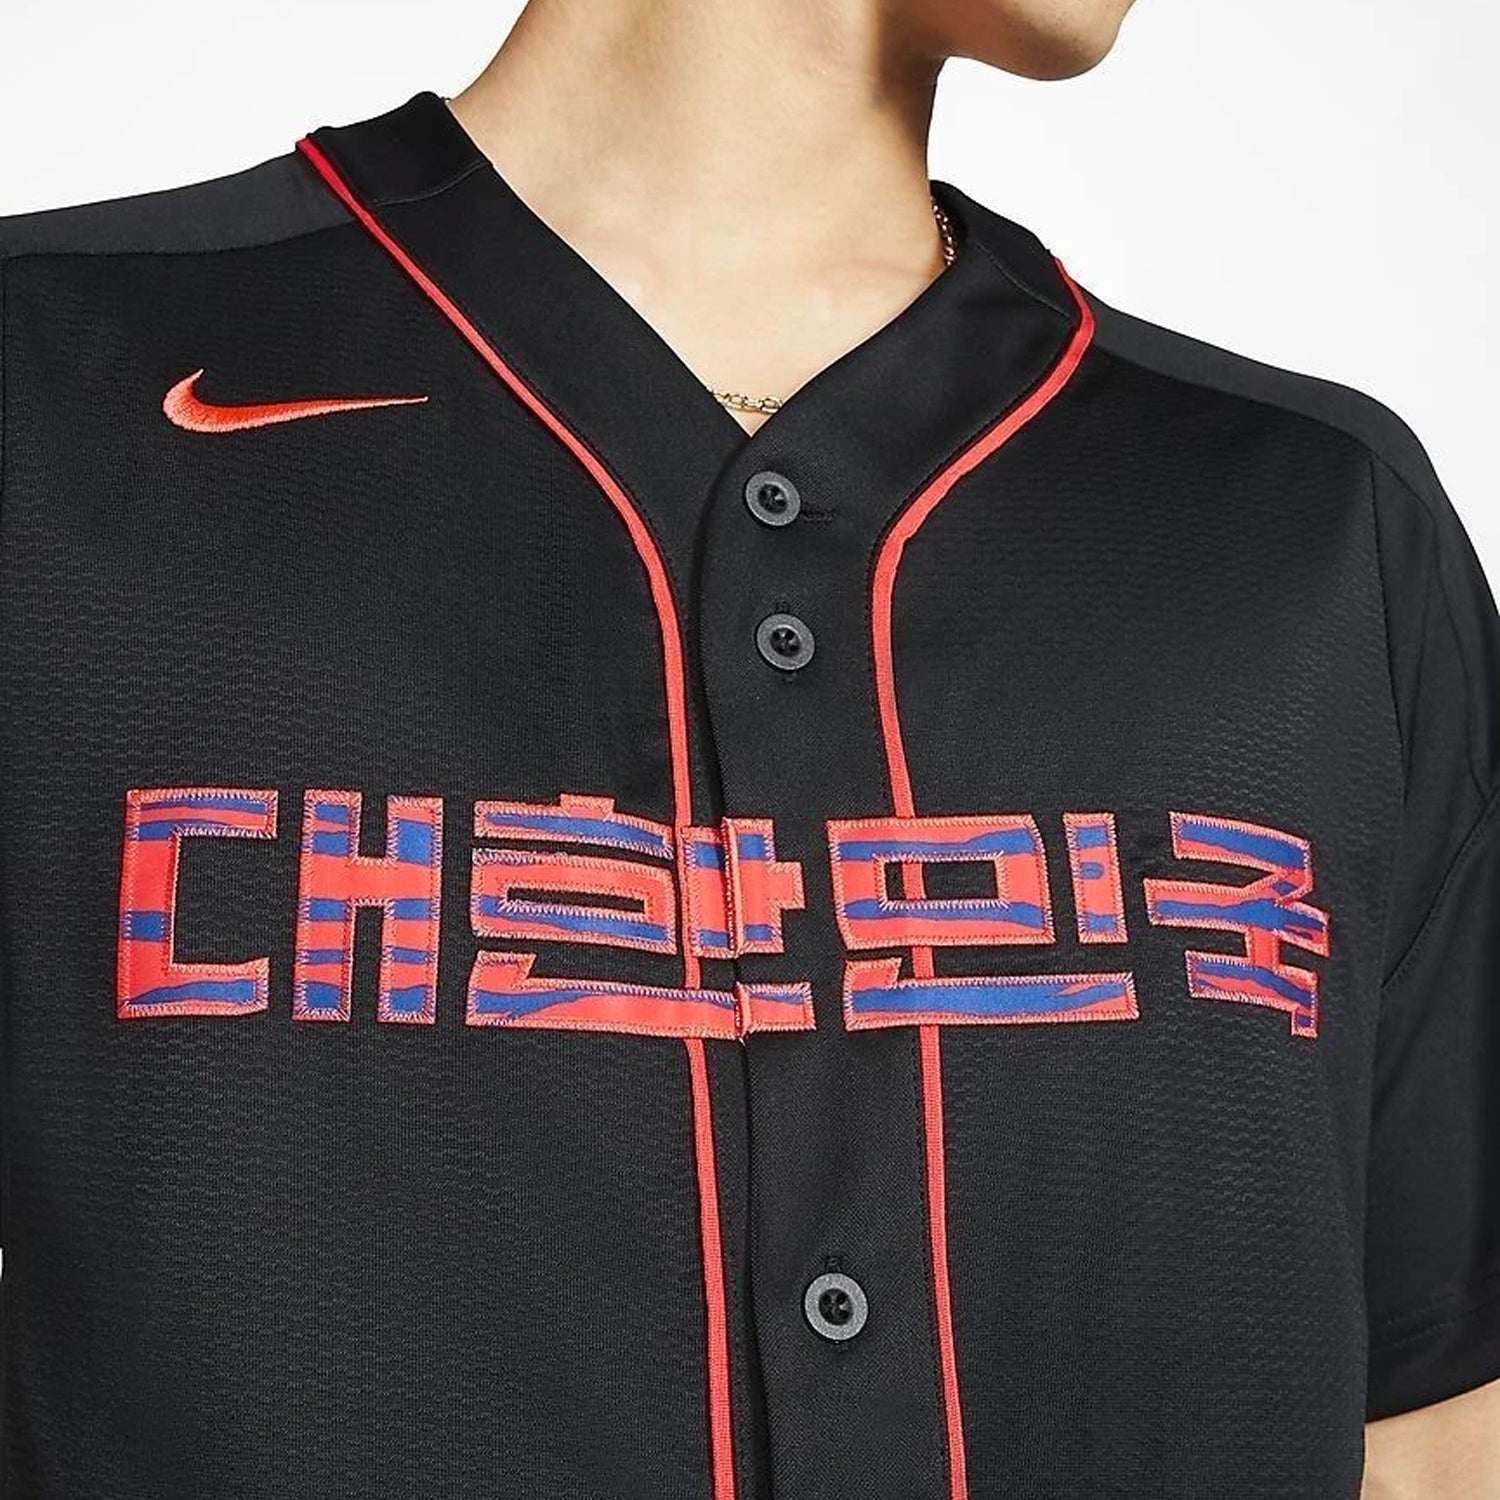 nike korea baseball jersey